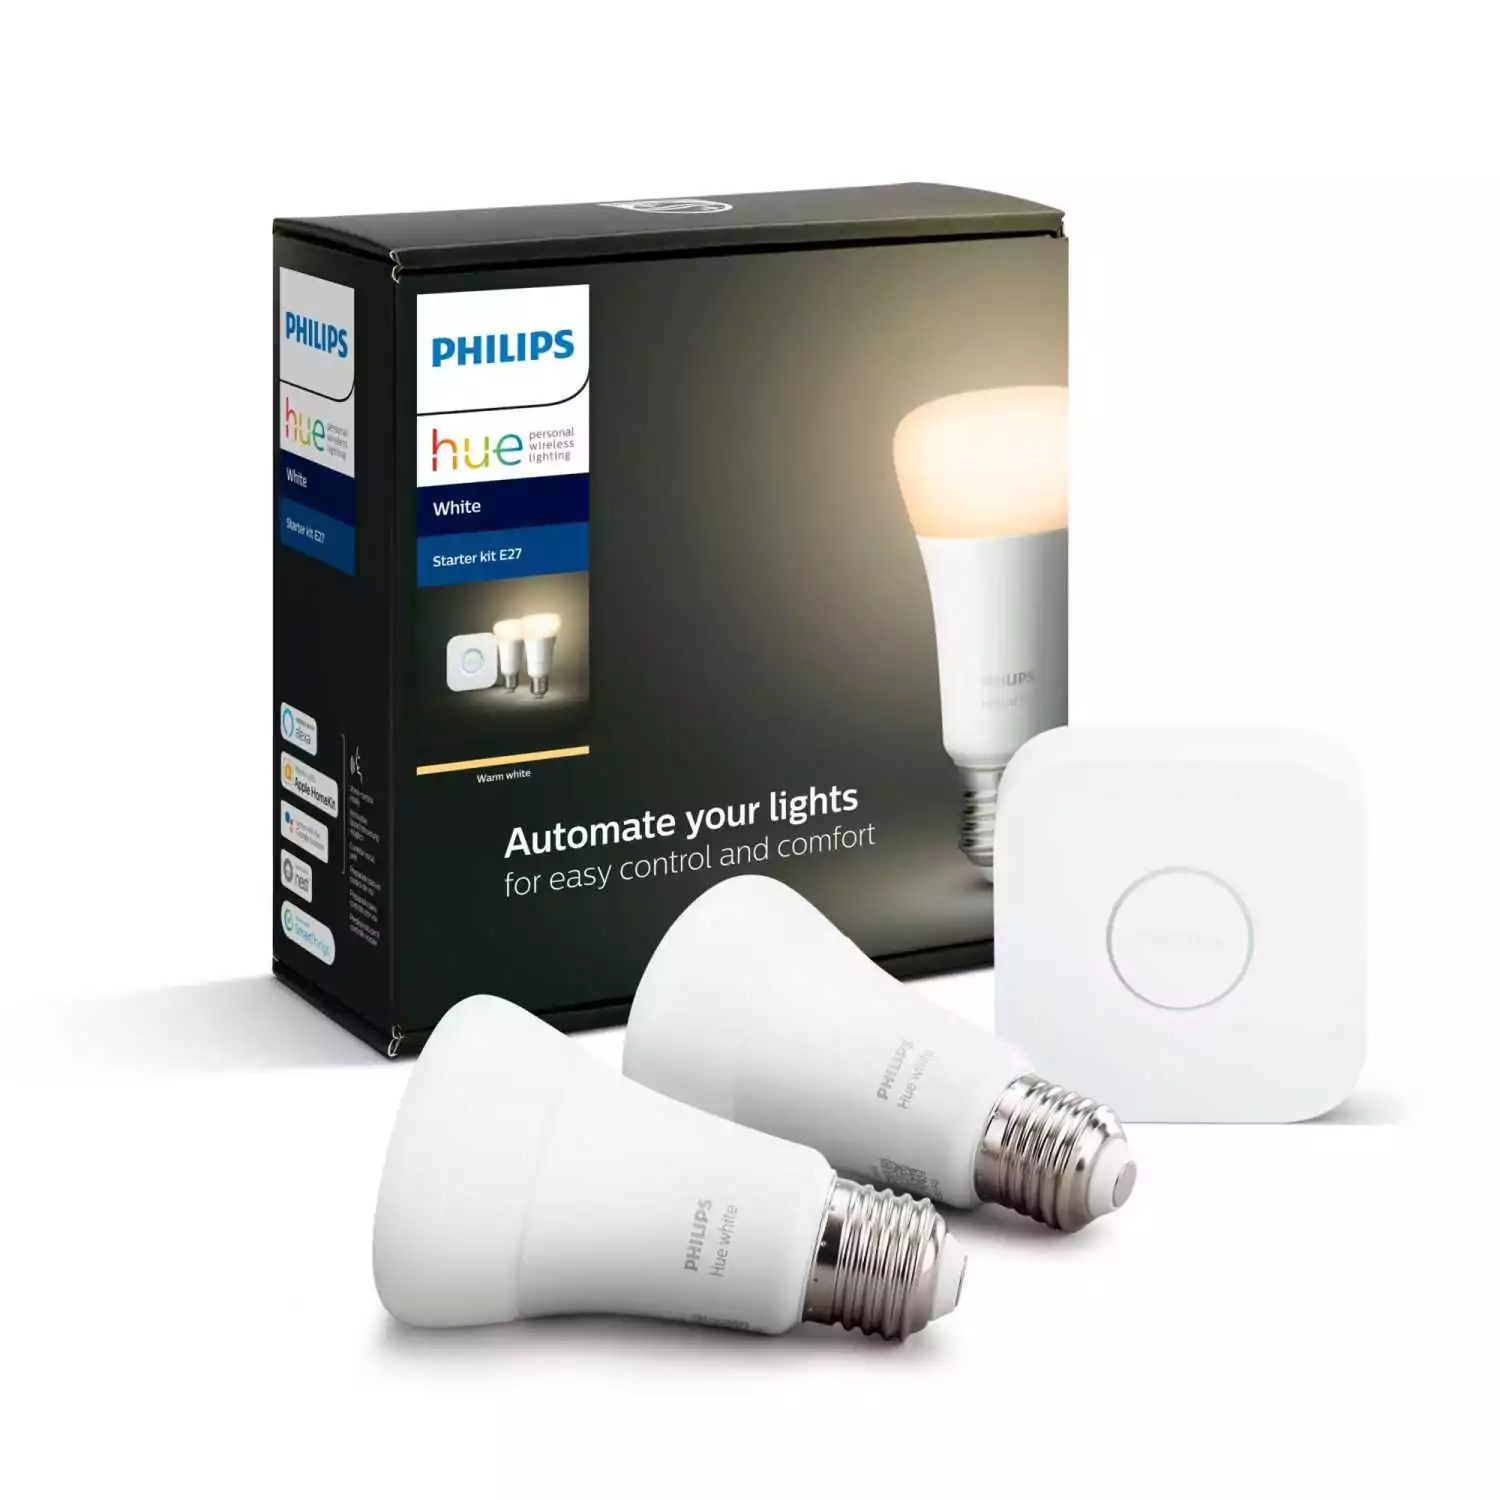 Комплект из 2 лампочек и блока управления освещением Philips Hue, белый свет 5